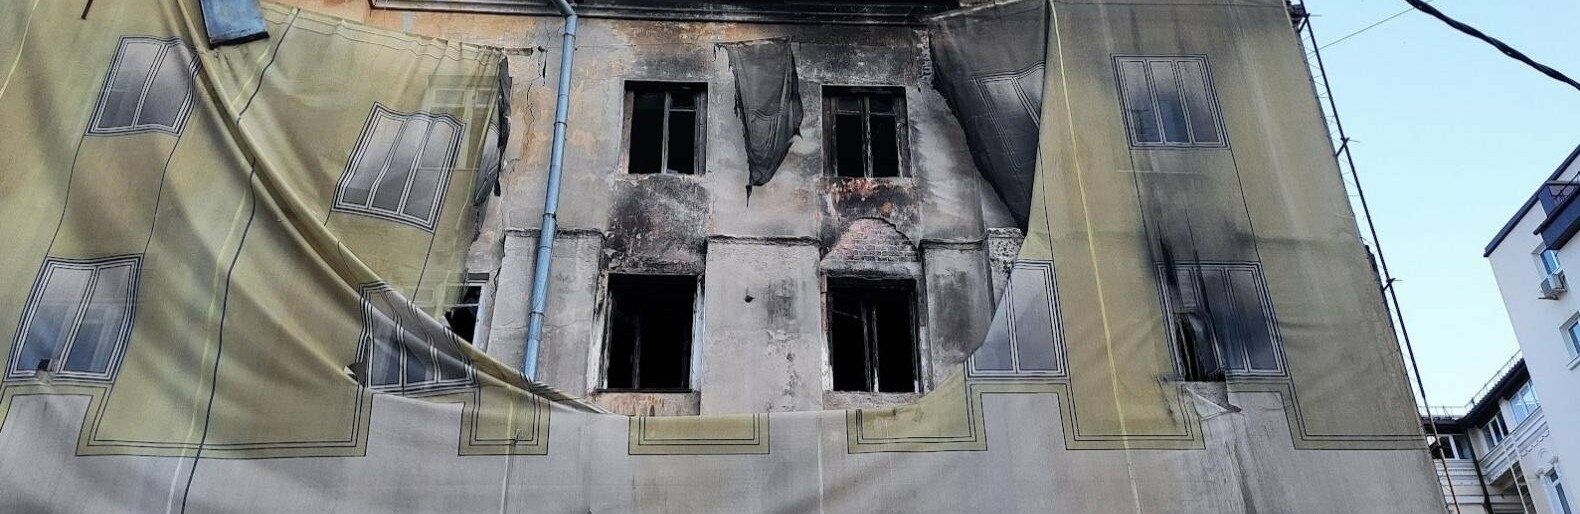 Минстрой рассказал о провале расселения аварийных домов в Ростове из-за скачка цен на жильё